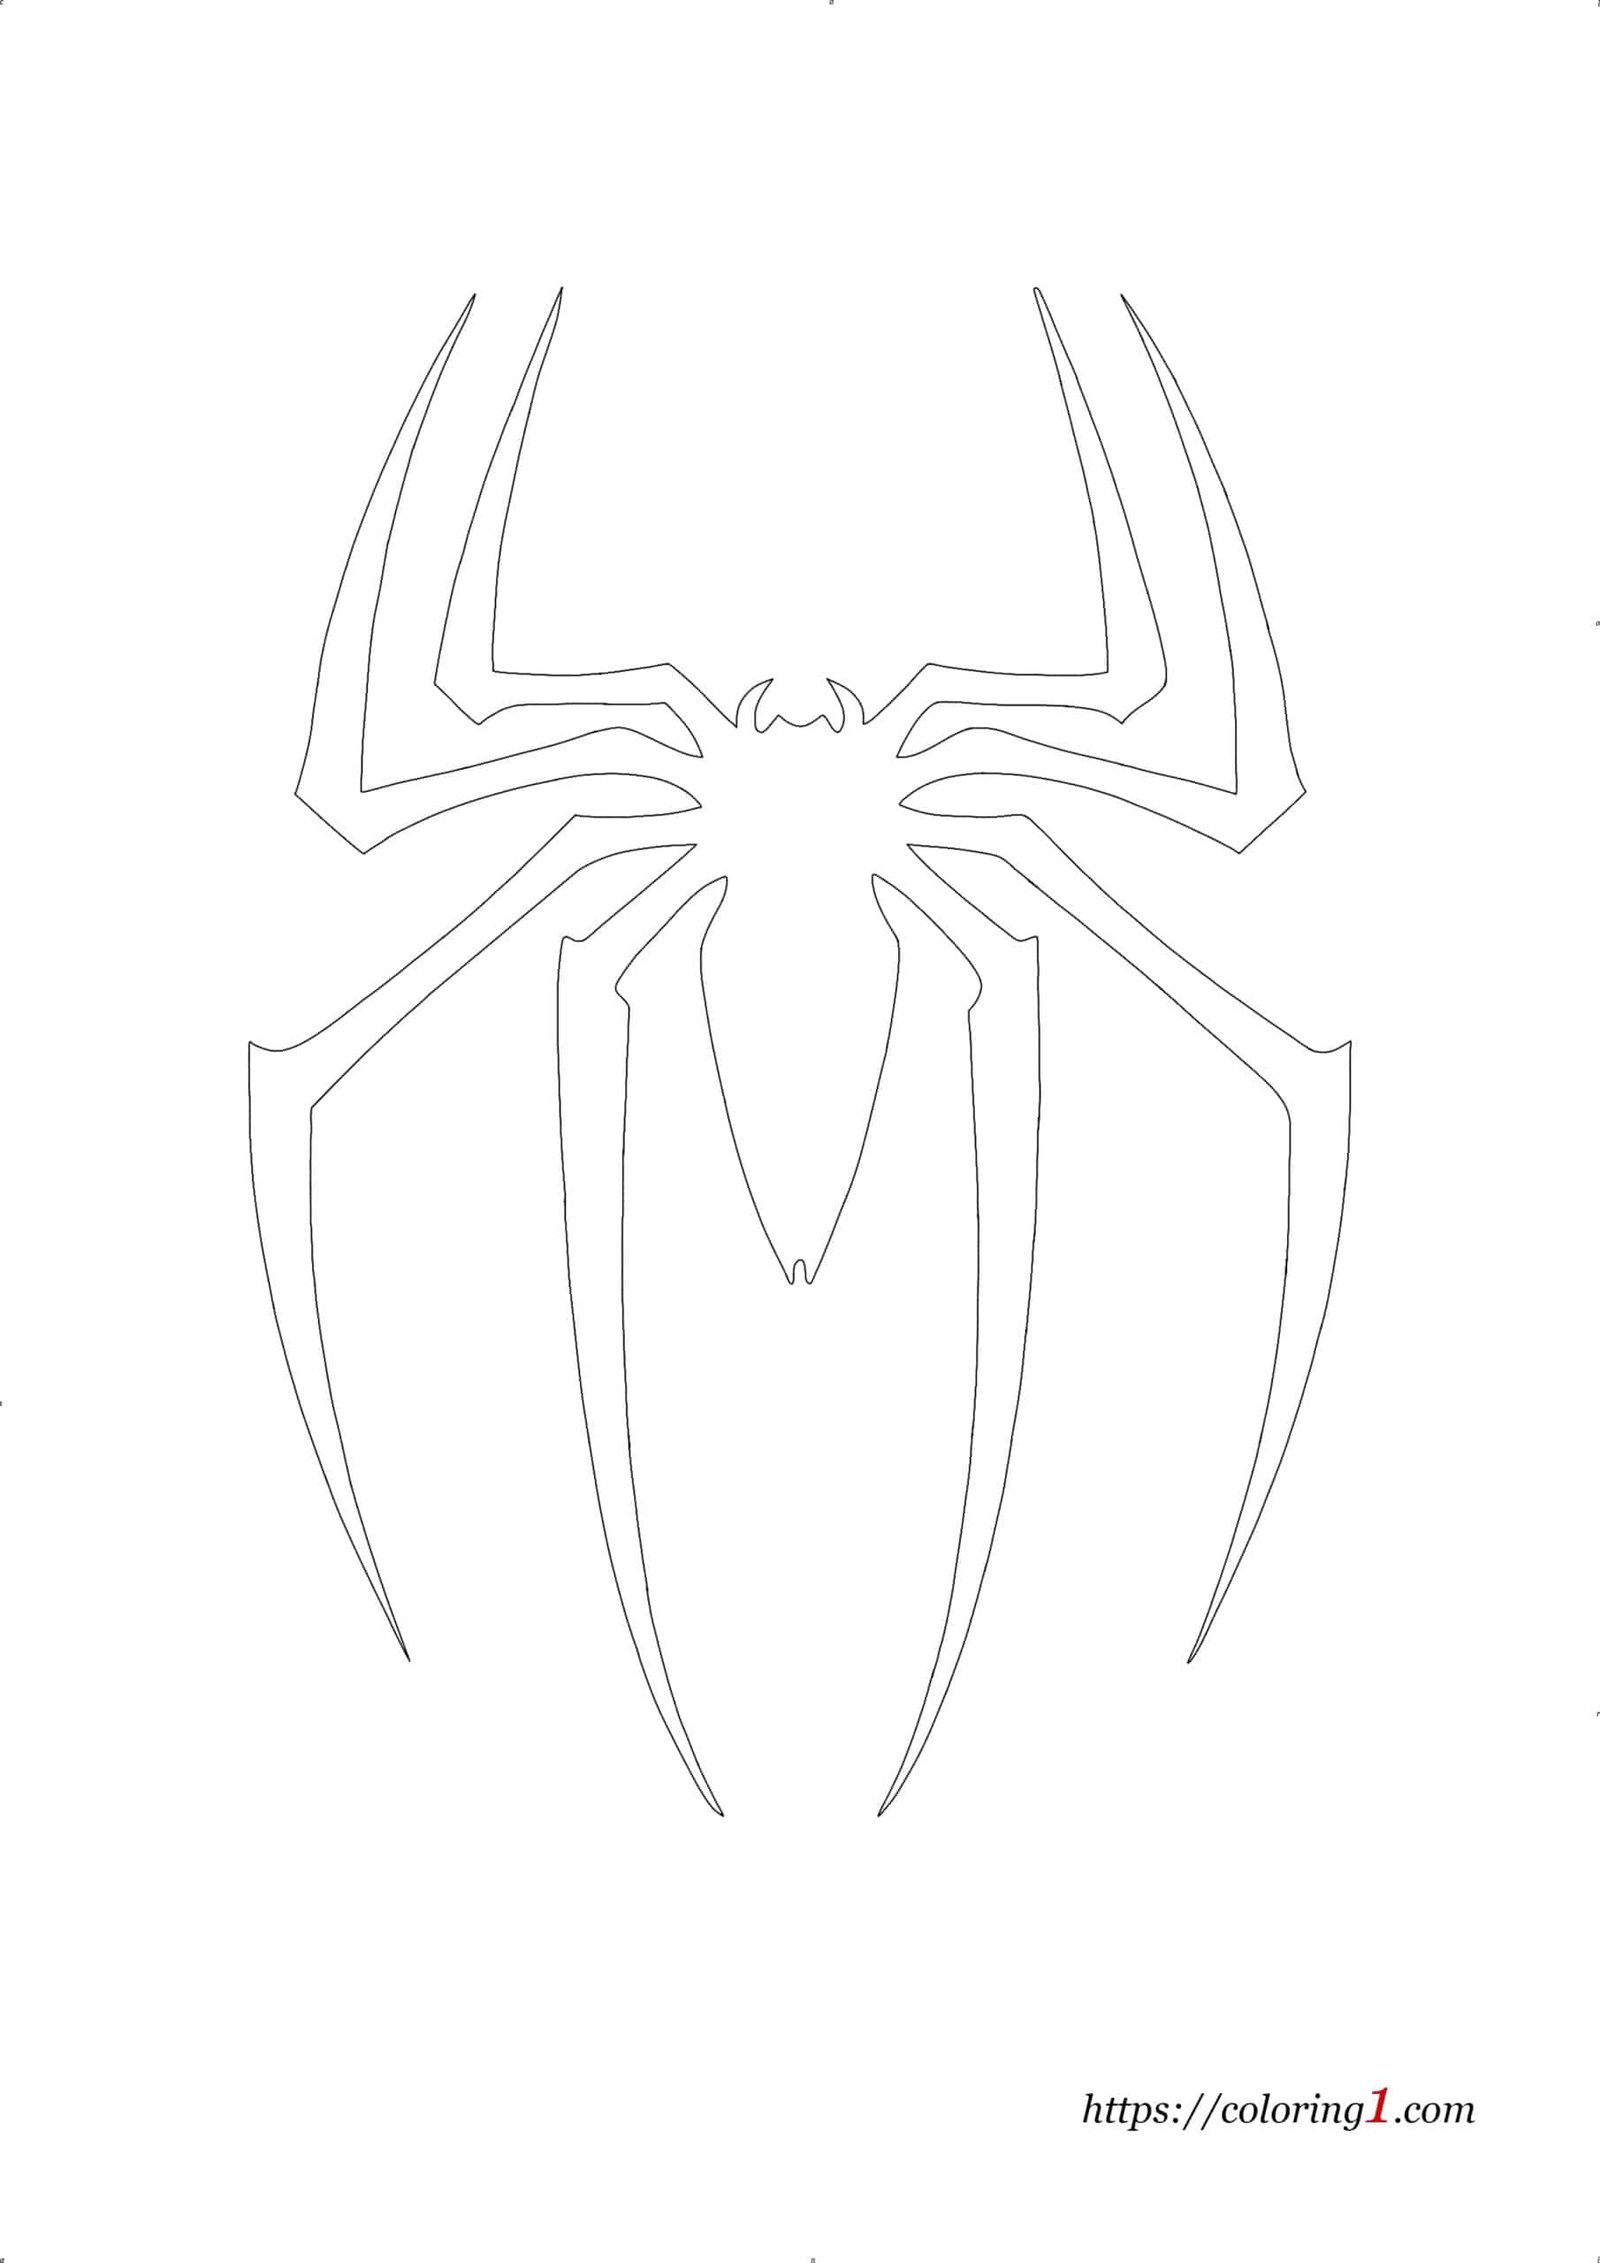 Coloriage Spiderman Logo